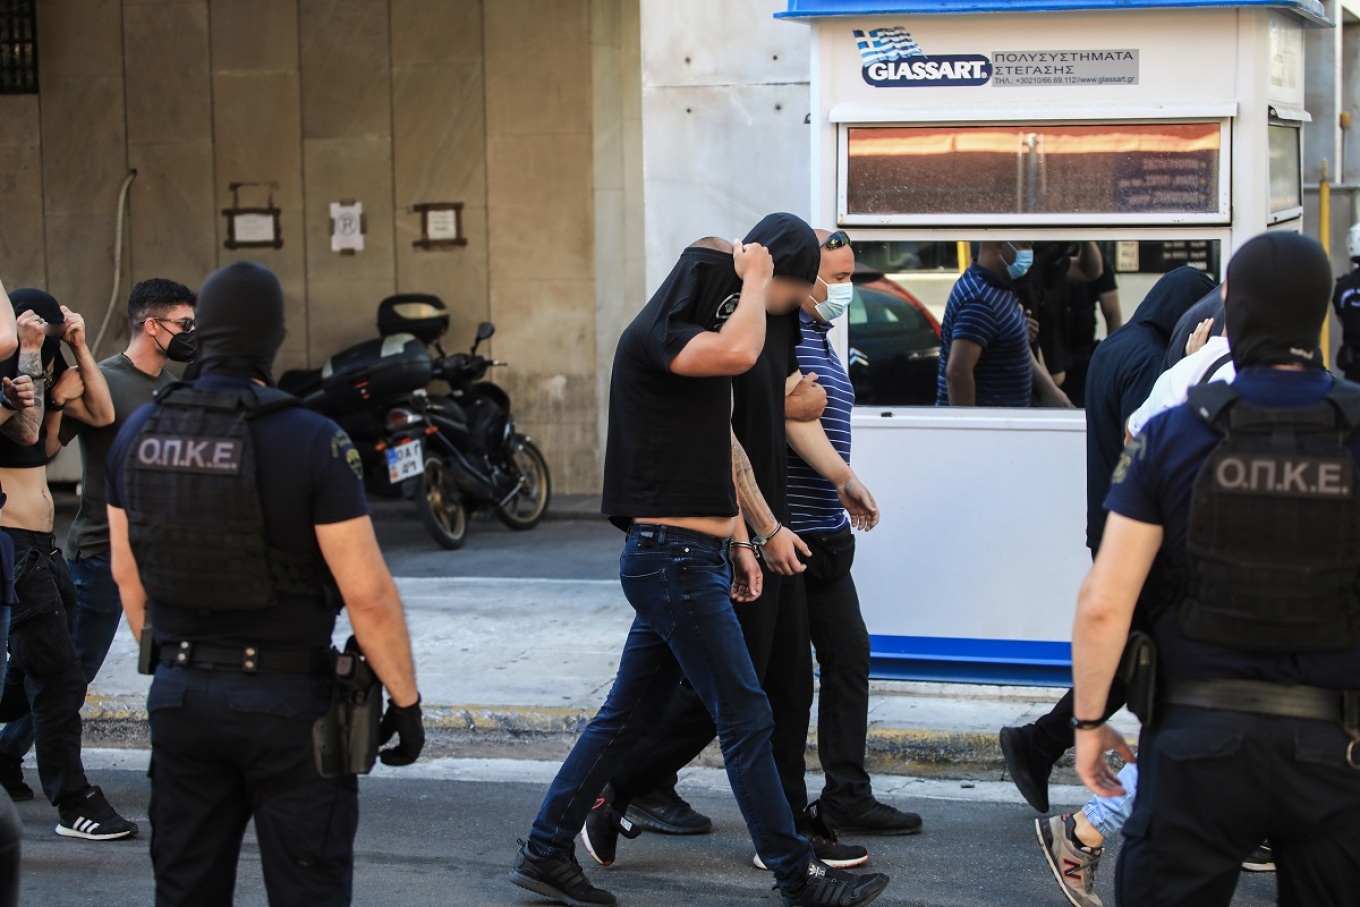 "Διέφυγαν στη χώρα τους οι οργανωτές της «εκδρομής θανάτου» των χούλιγκαν" - Κροατική εφημερίδα αποκαλύπτει